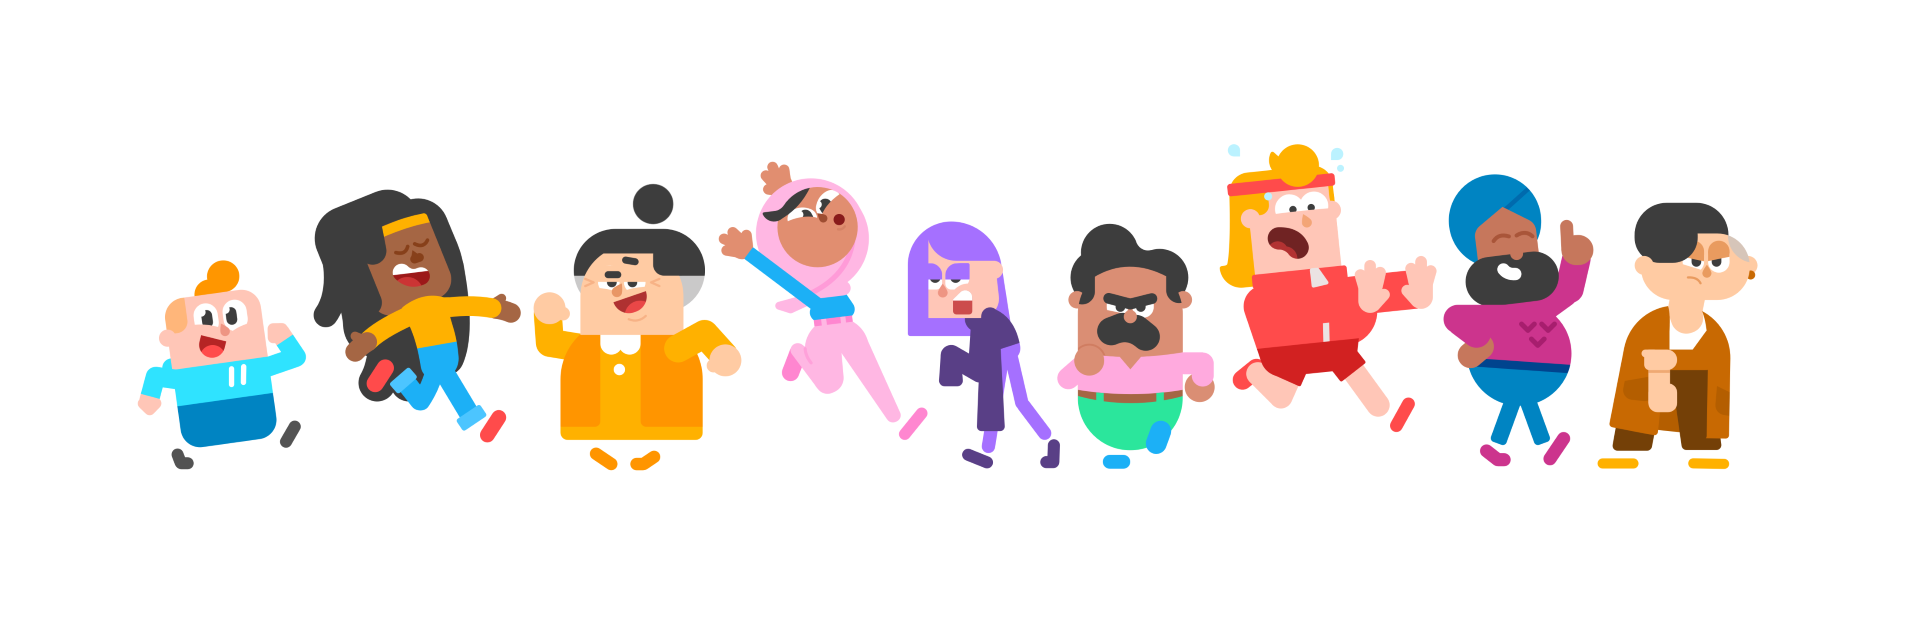 Duolingo created a cast of nine characters